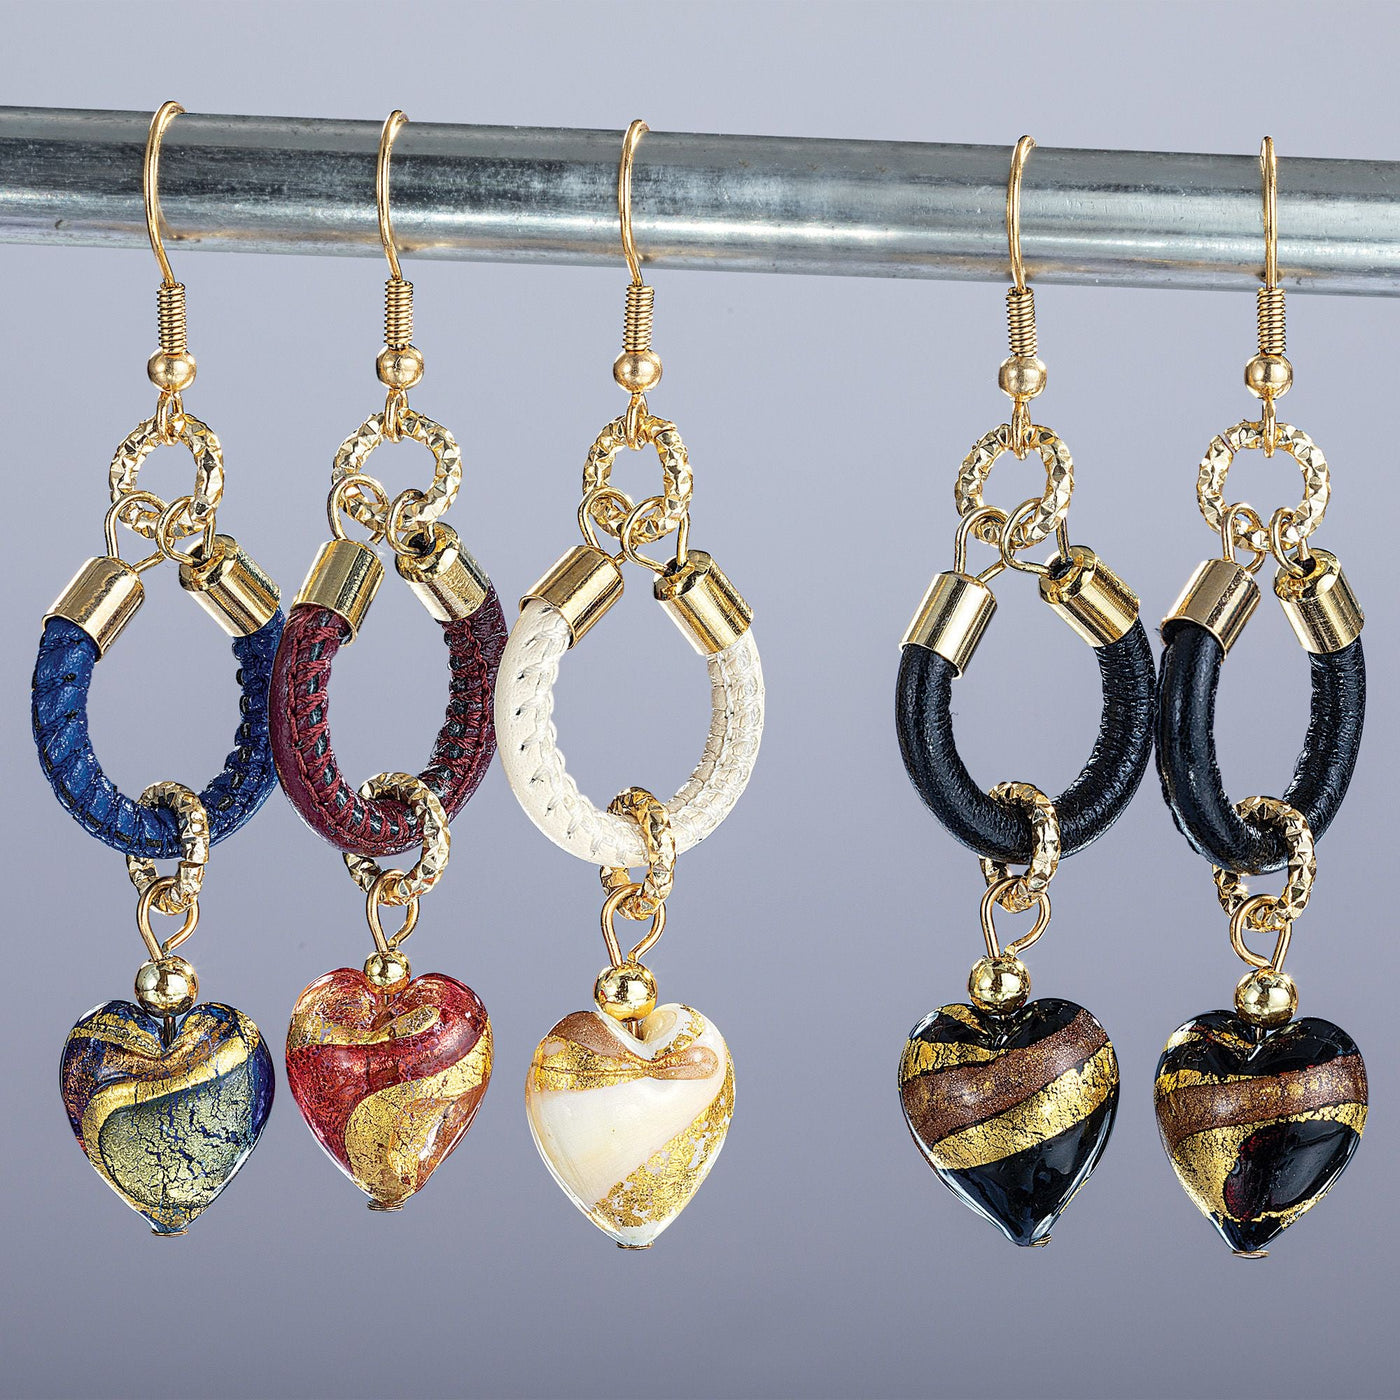 Ruby Heart Murano Glass Earrings